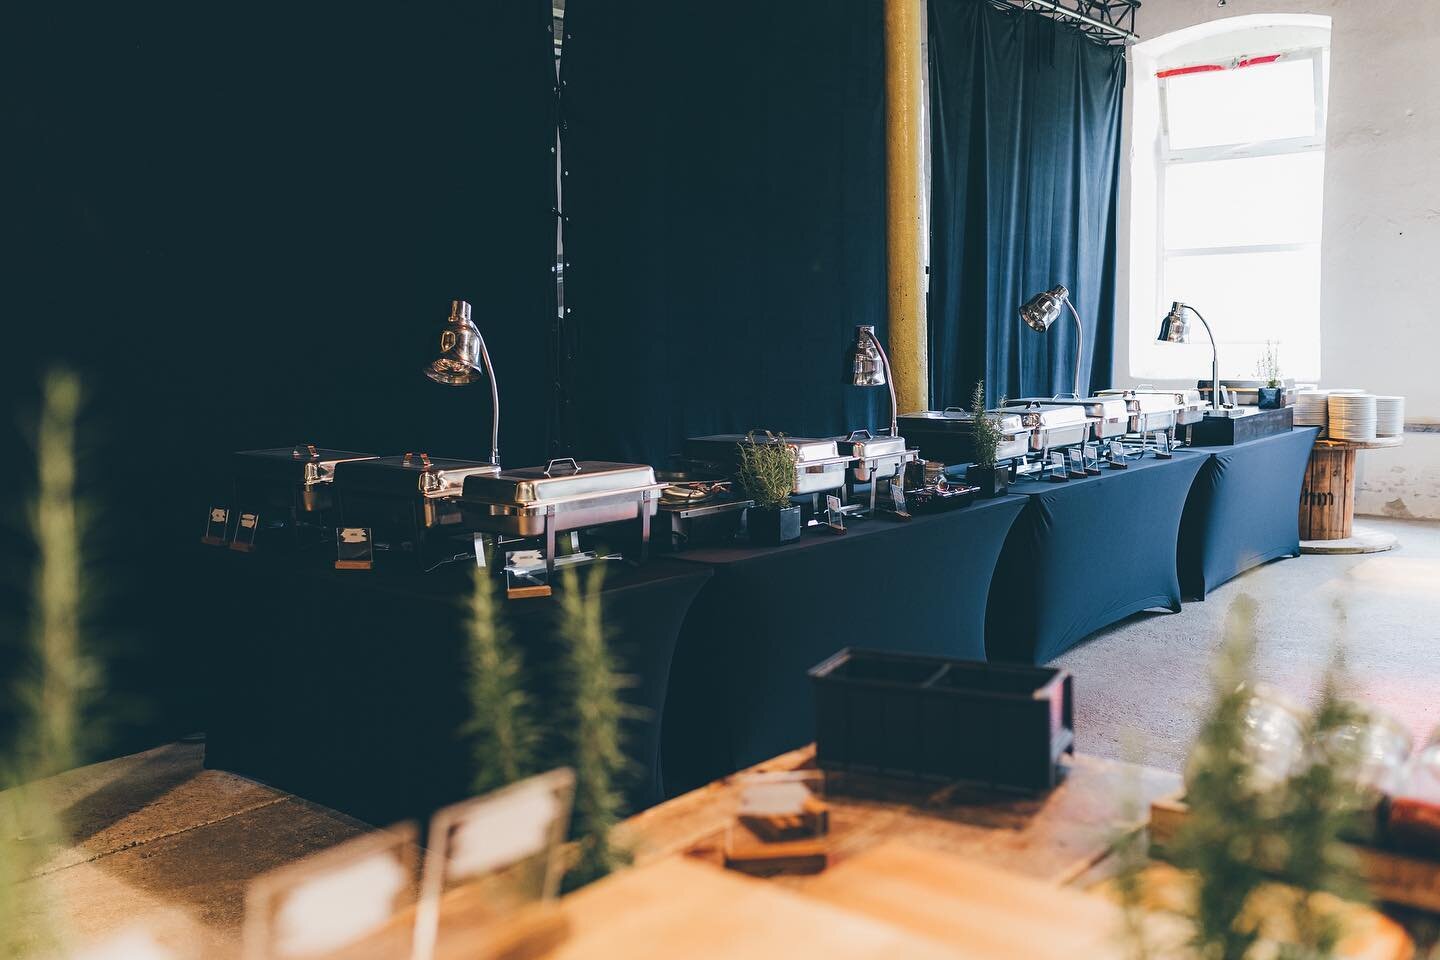 Buffet Aufbau im R&ouml;hm, einer alten Lederfabrik in Schorndorf. Wir sind jedes Mal aufs Neue &uuml;berrascht wie unterschiedlich und wundersch&ouml;n die Location dekoriert werden kann. #catering #location #buffet #wedding #food #livecooking